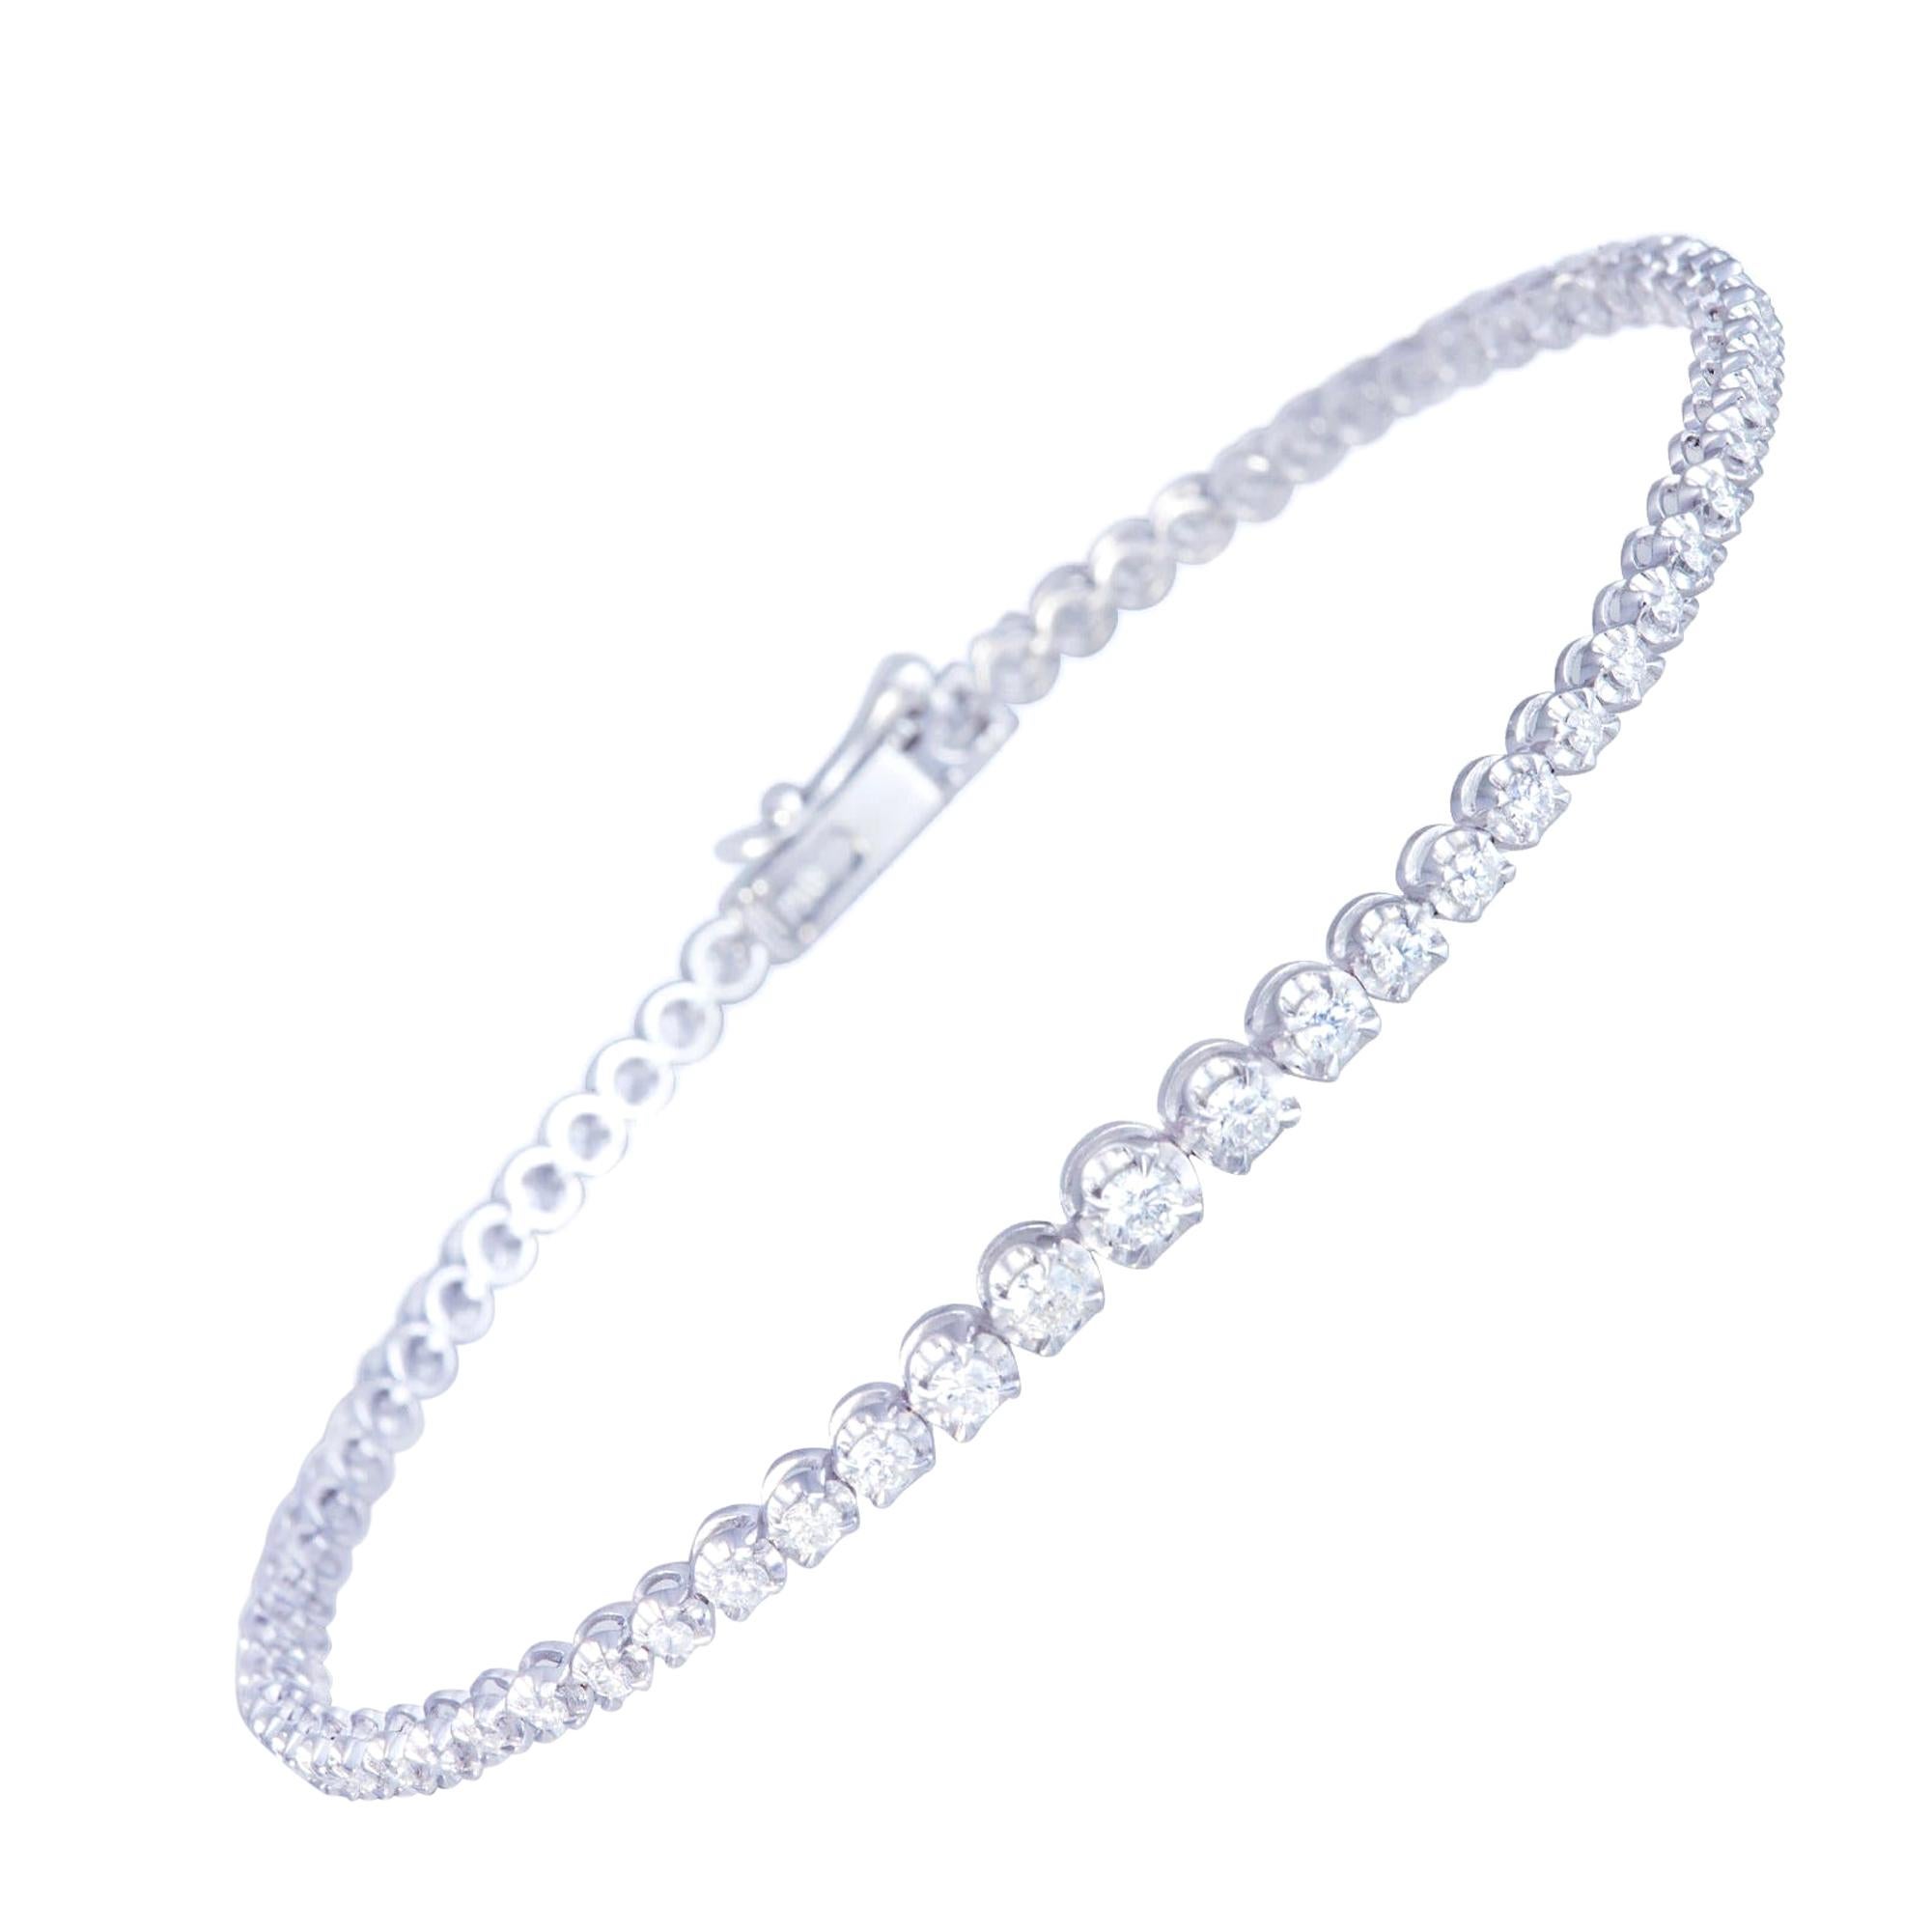 Abgestufte Fassung Diamant-Tennisarmband-Armband-Armband 18k Weißgold Diamant für